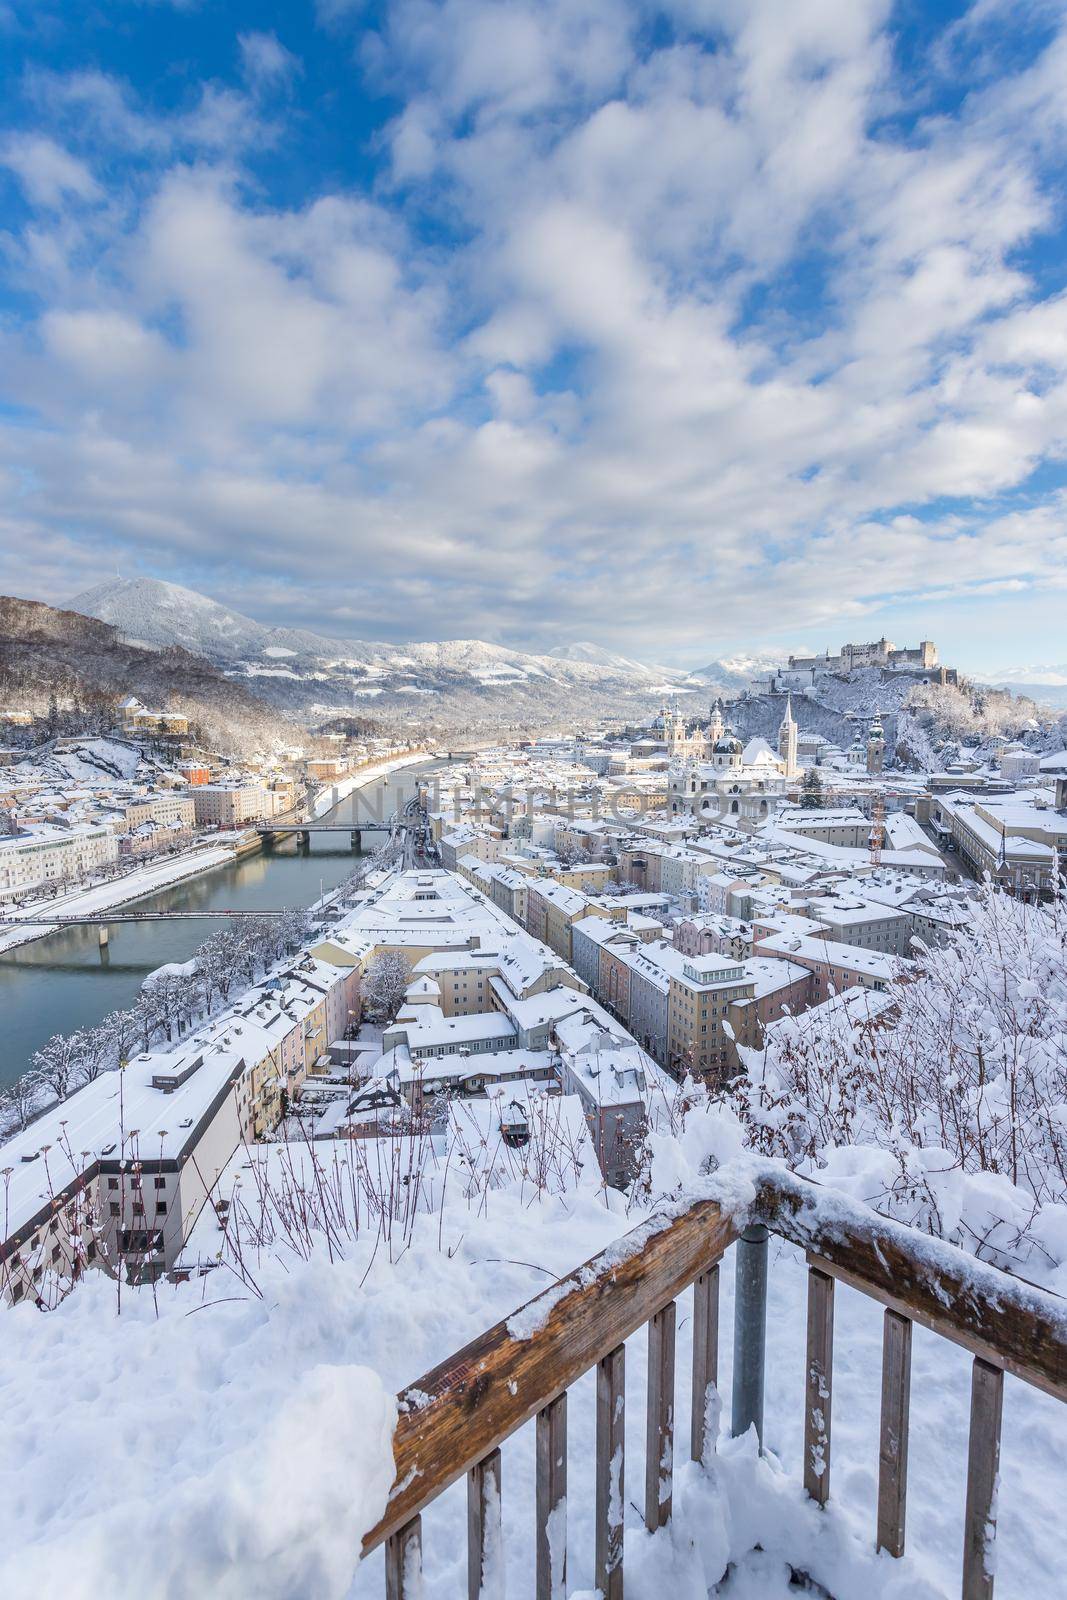 Viewpoint, Salzburg in winter: Snowy historical center, sunshine by Daxenbichler